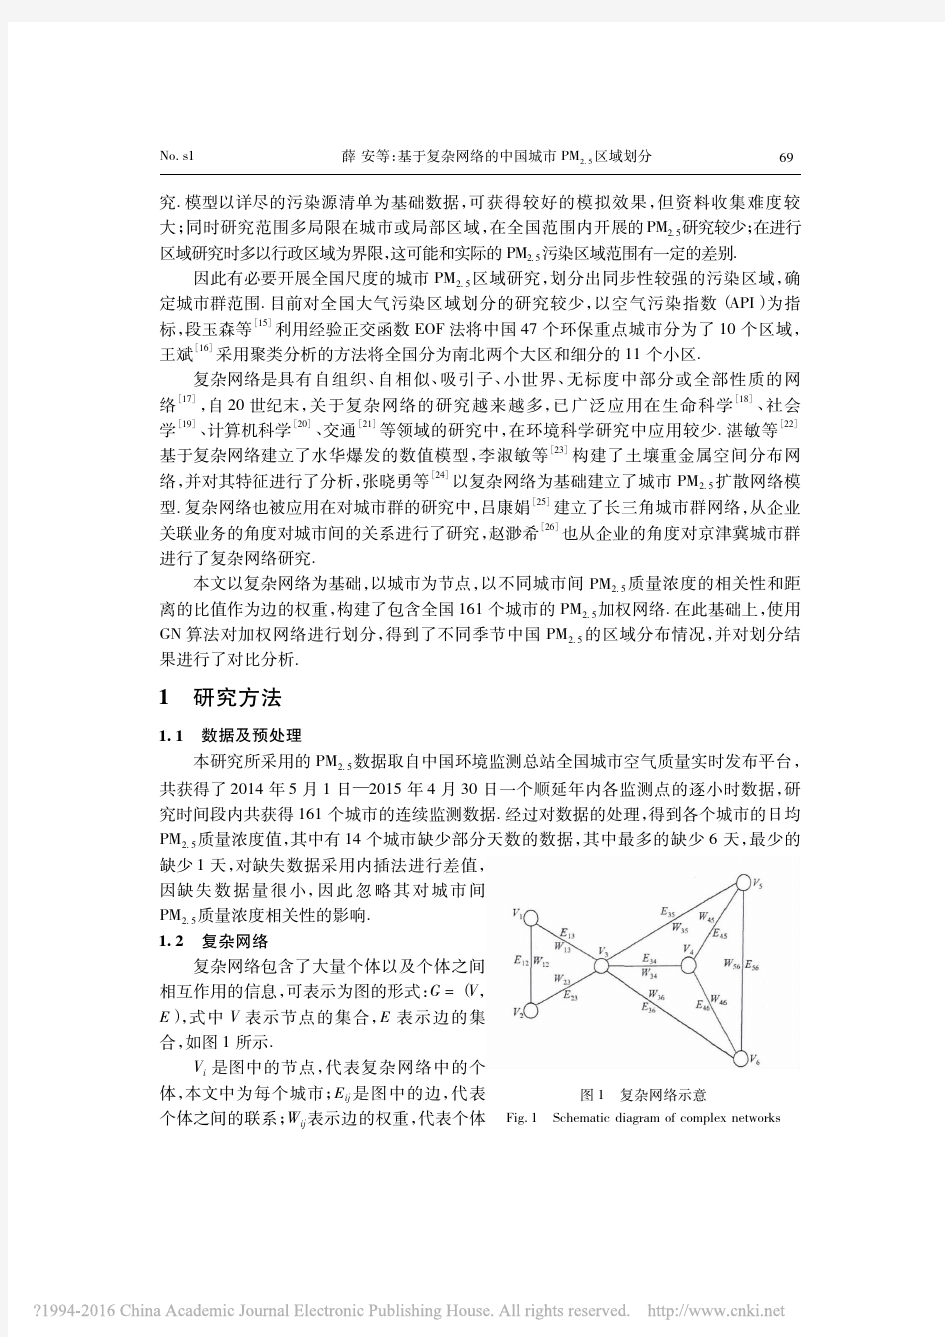 基于复杂网络的中国城市PM_(2_5)区域划分